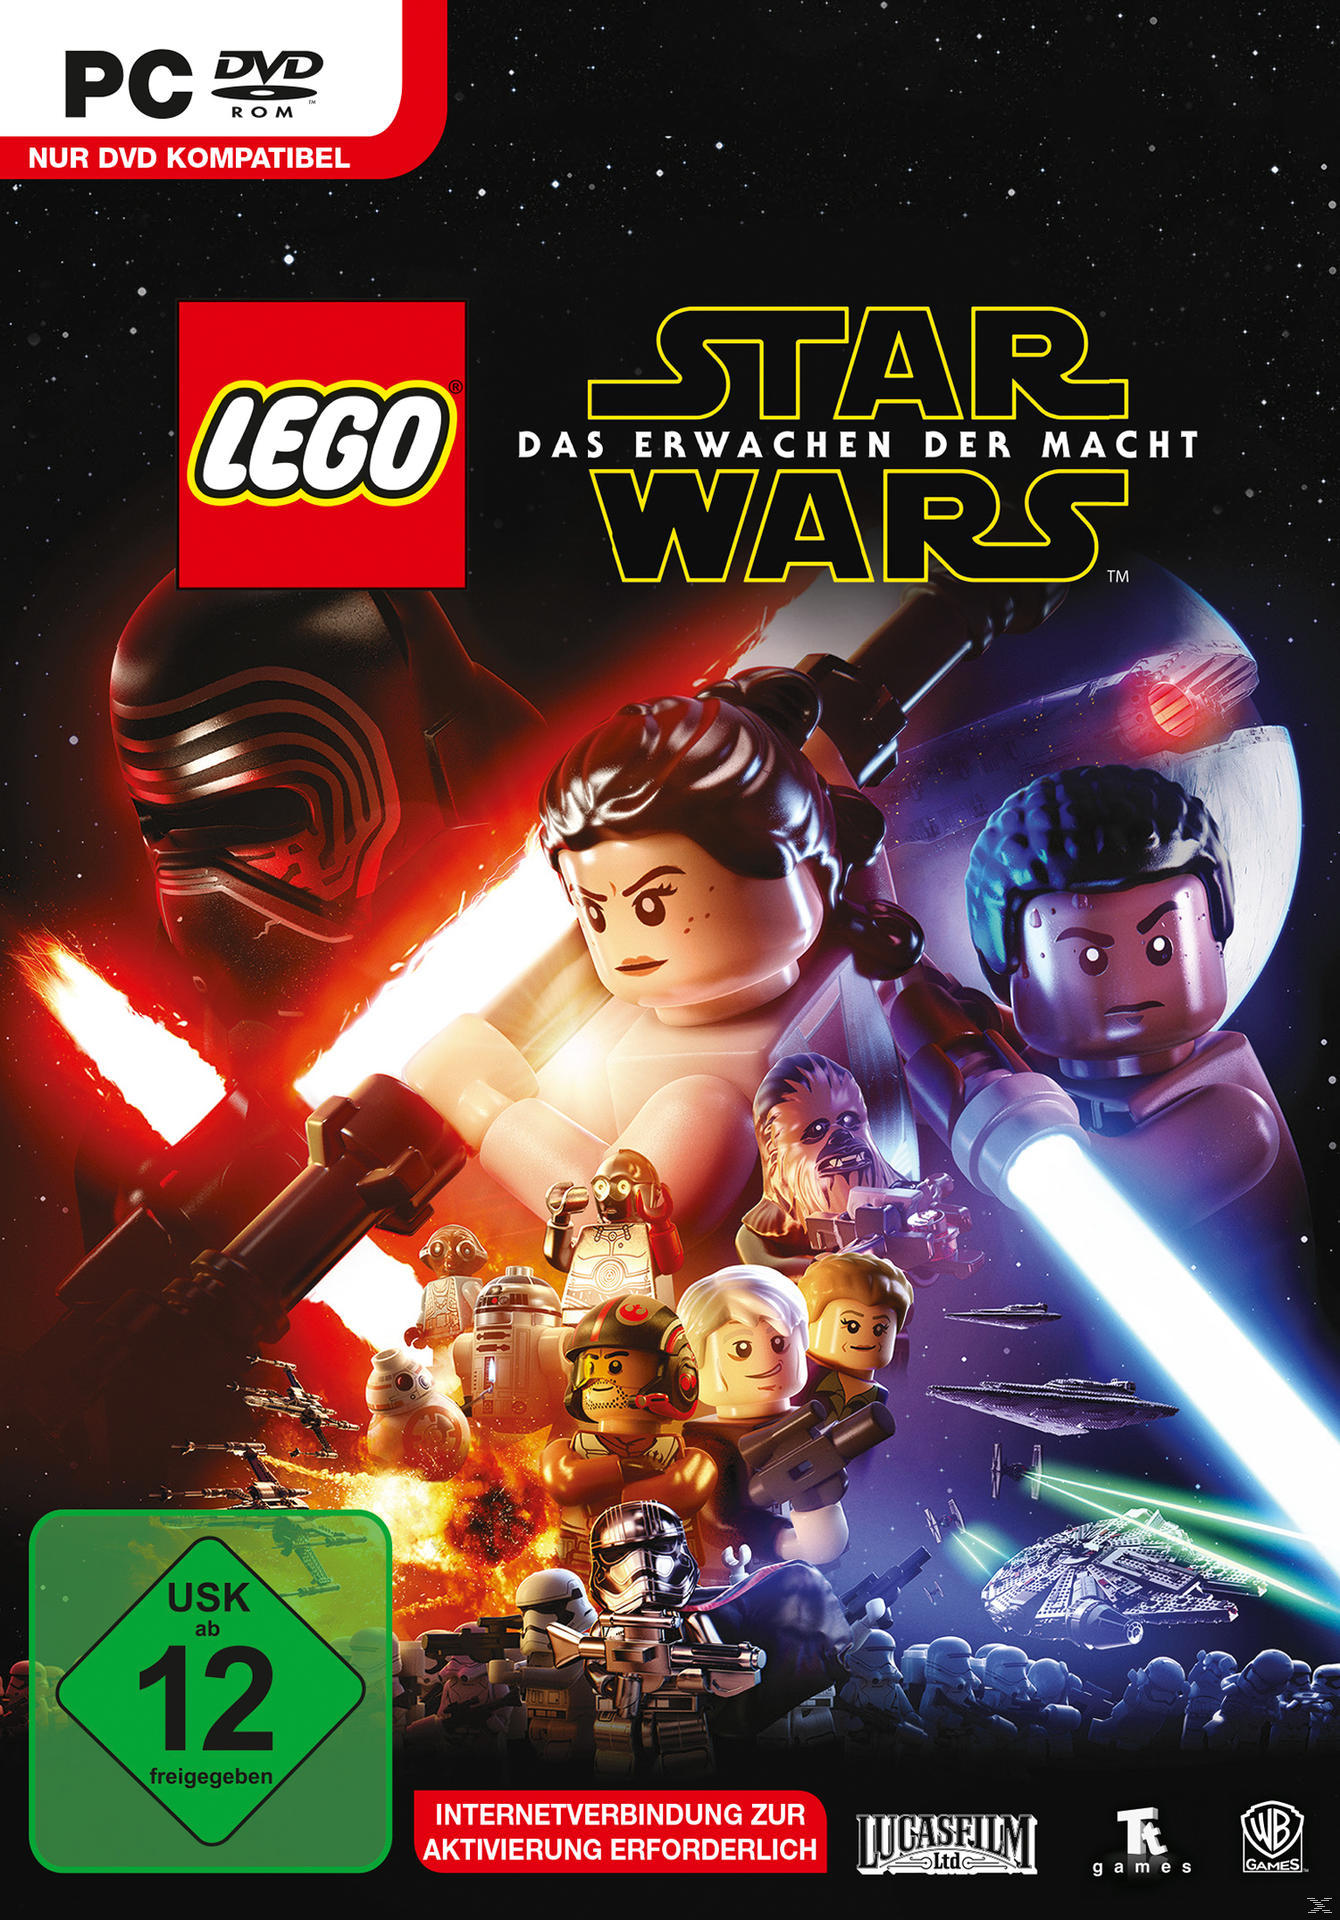 LEGO Erwachen Das Wars Macht [PC] - der Star -